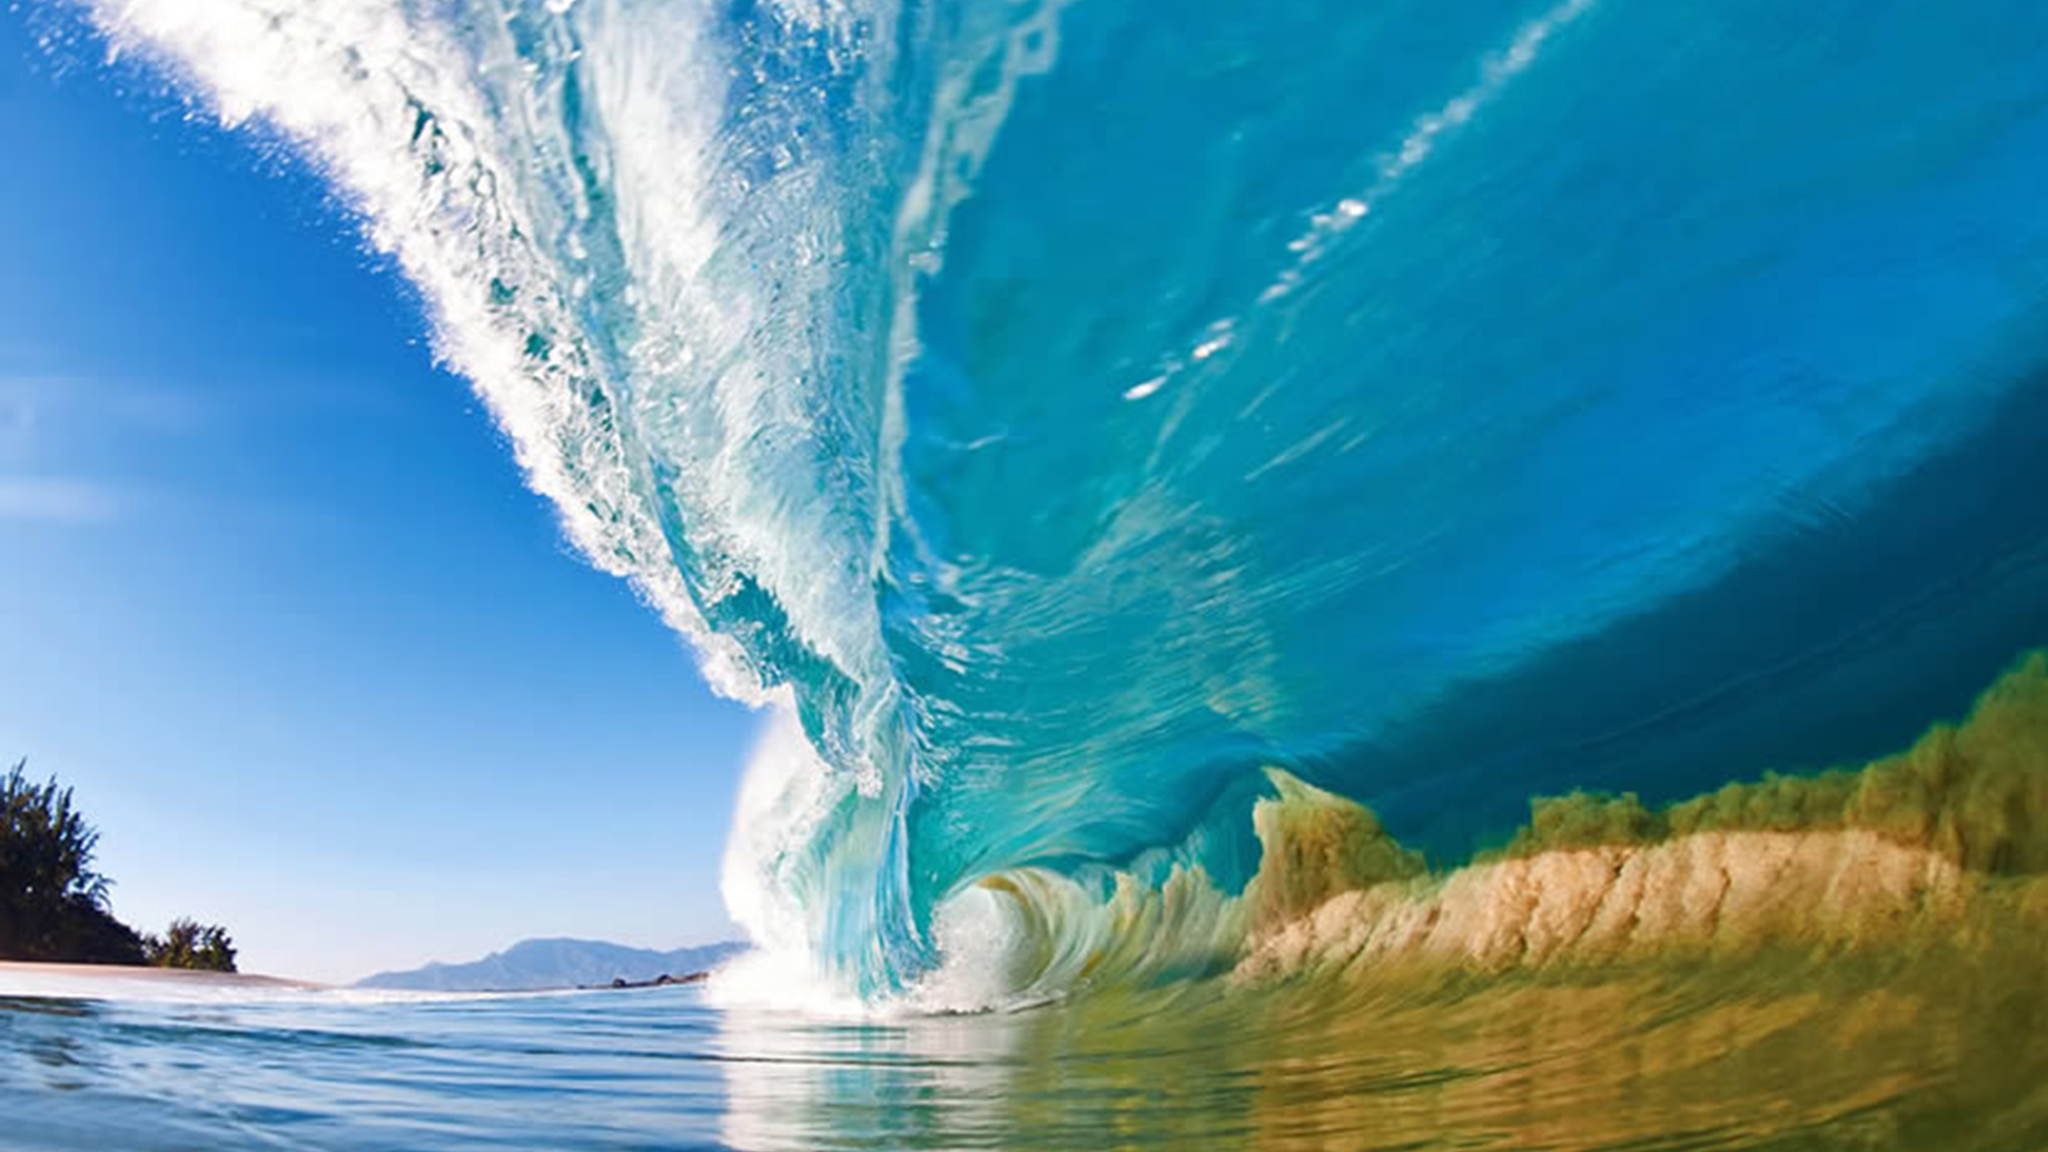 Ocean Wave Photography Clark Little S Shorebreak